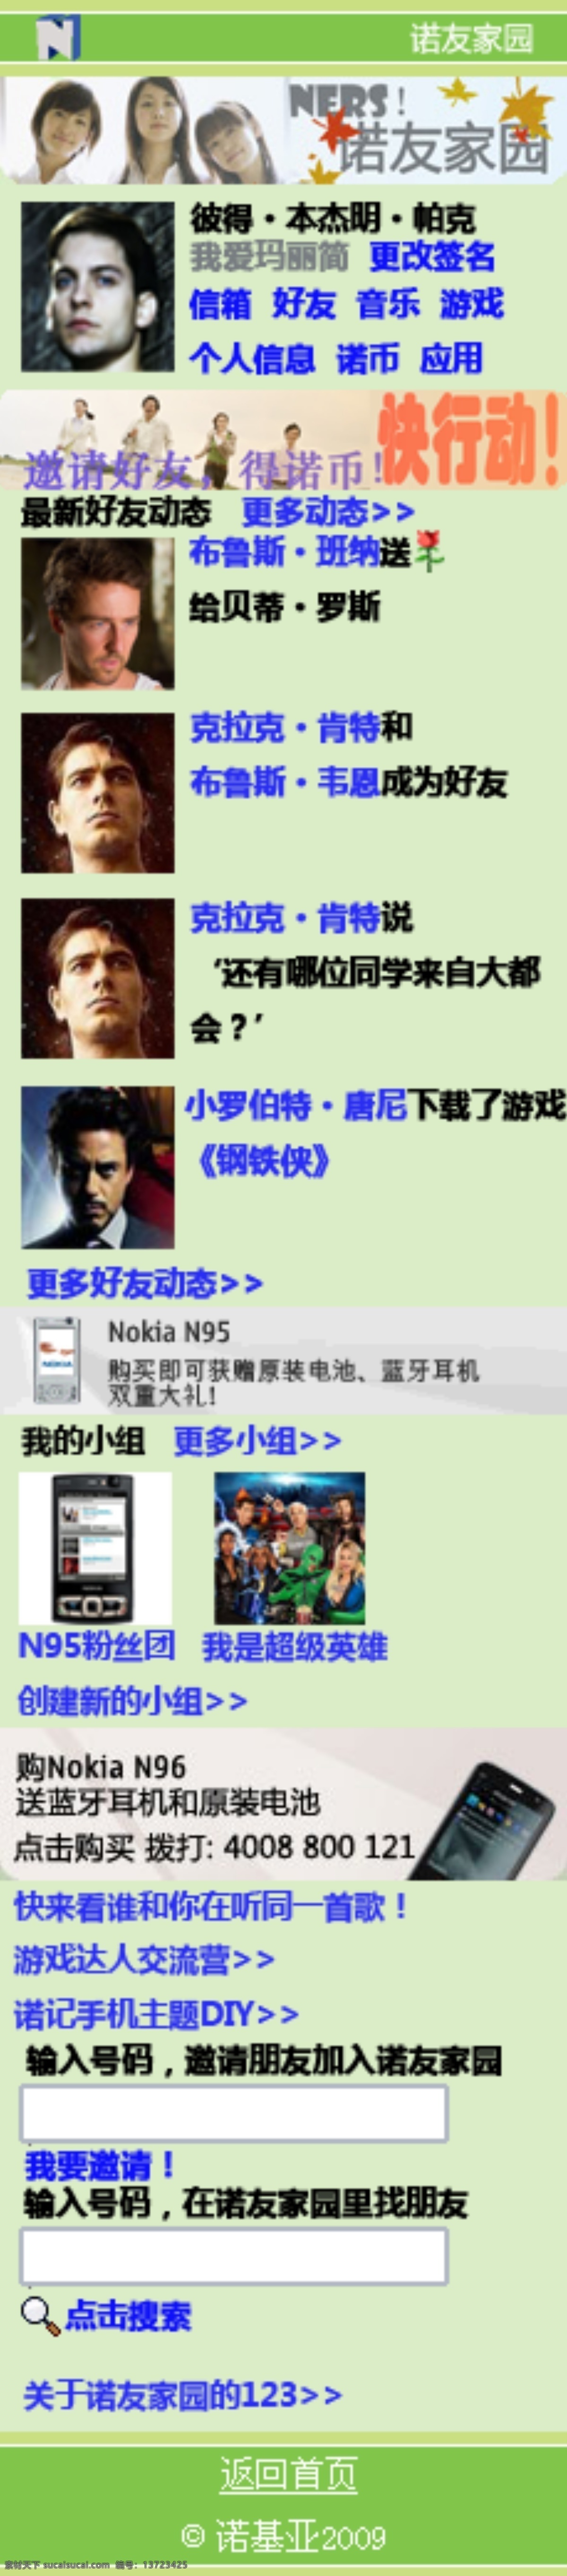 诺基亚 手机 界面 nokia 界面设计 app app界面